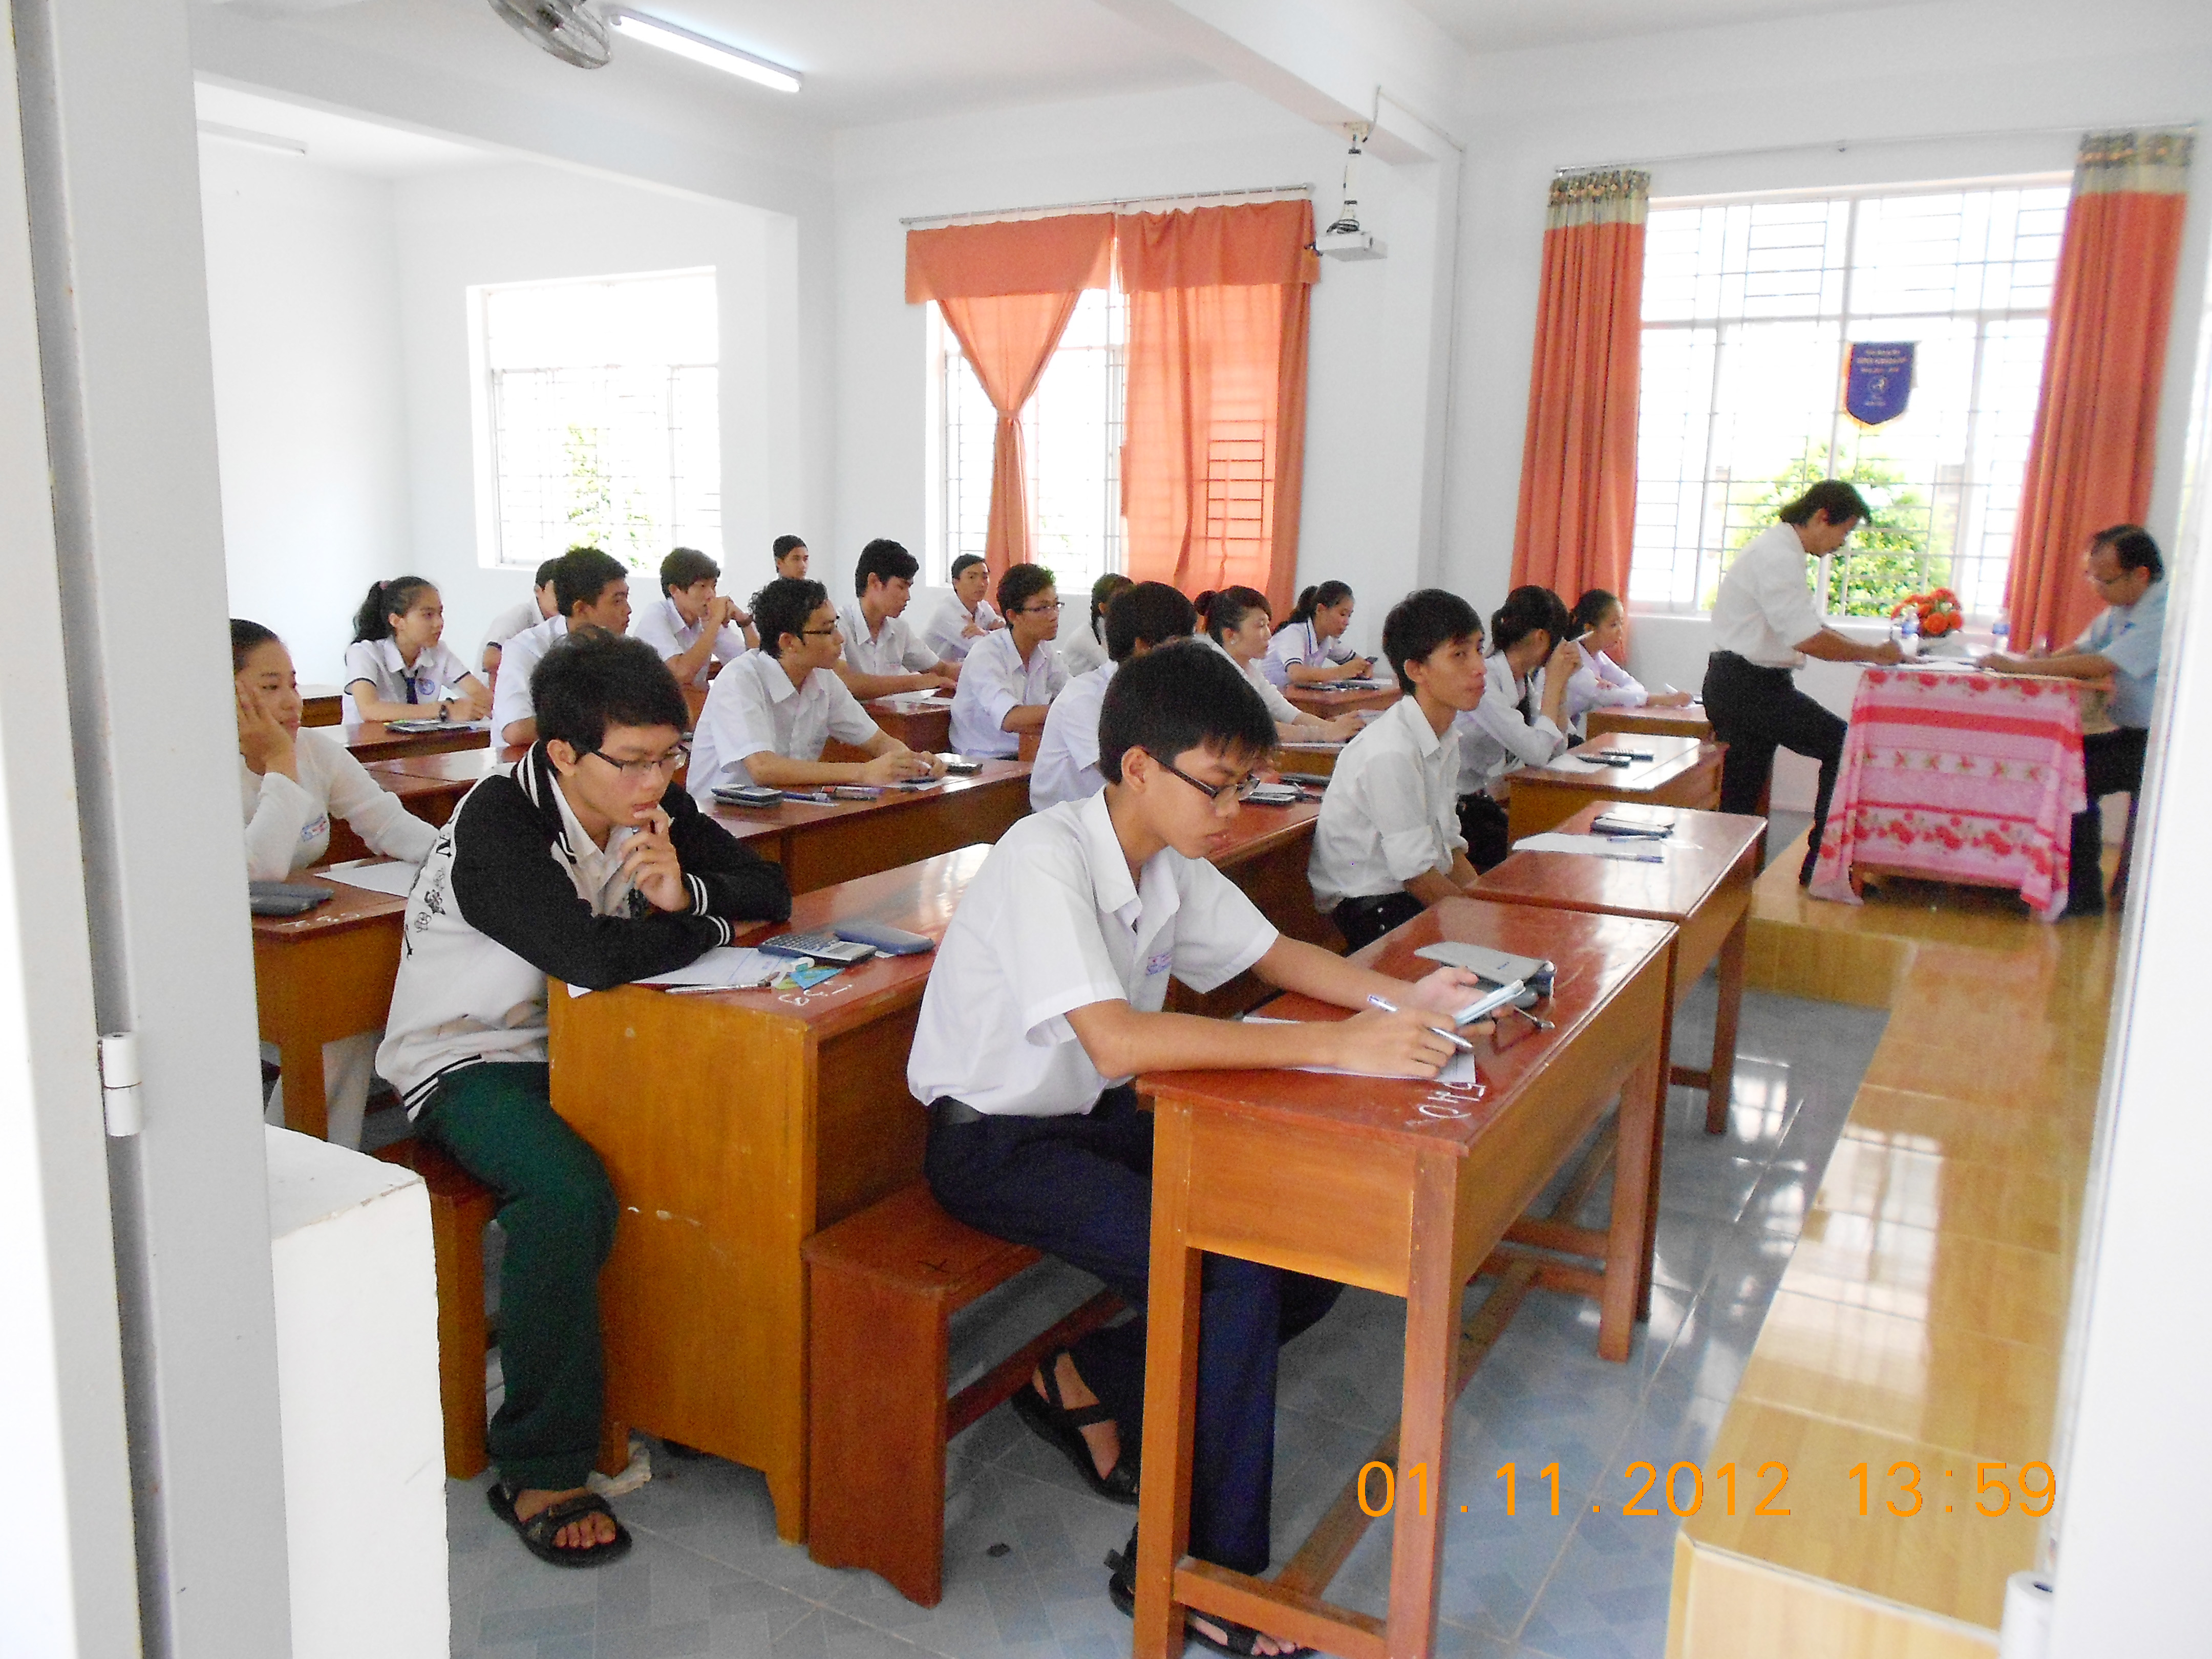 Ky thi cấp tỉnh kỳ thi học sinh giỏi Giải toán trên máy tính Casio tỉnh Kiên Giang